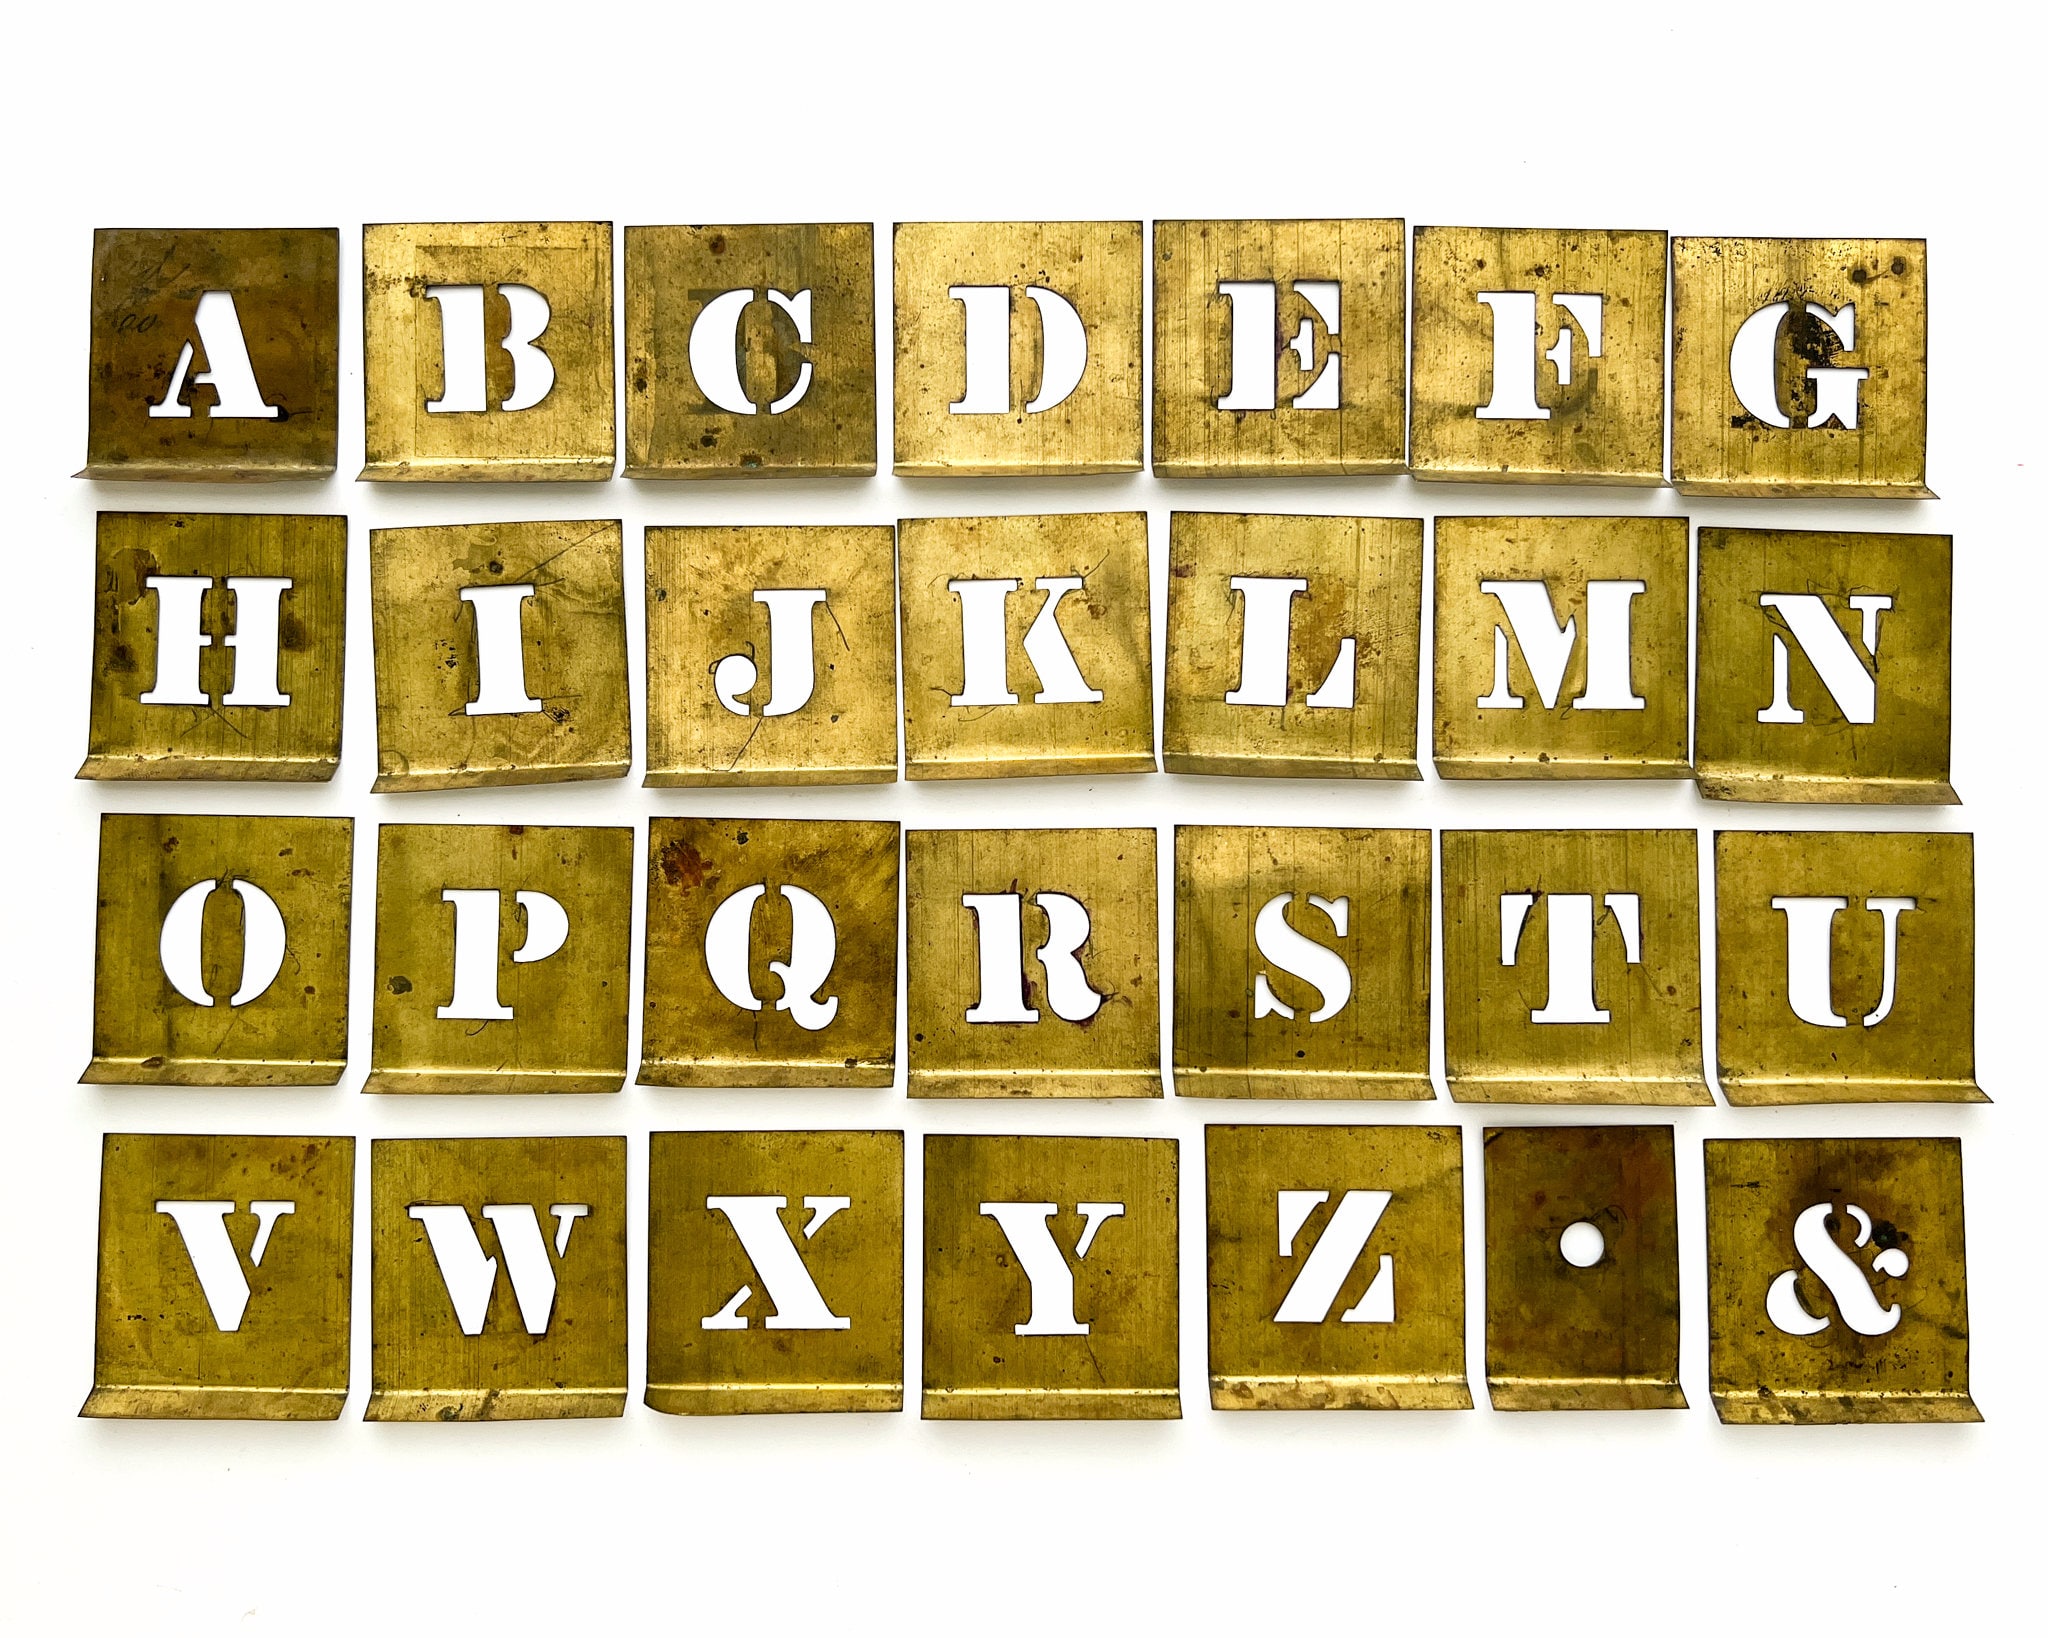 Wholesale GORGECRAFT 12PCS Plastic Letter Stencils Small Cursive